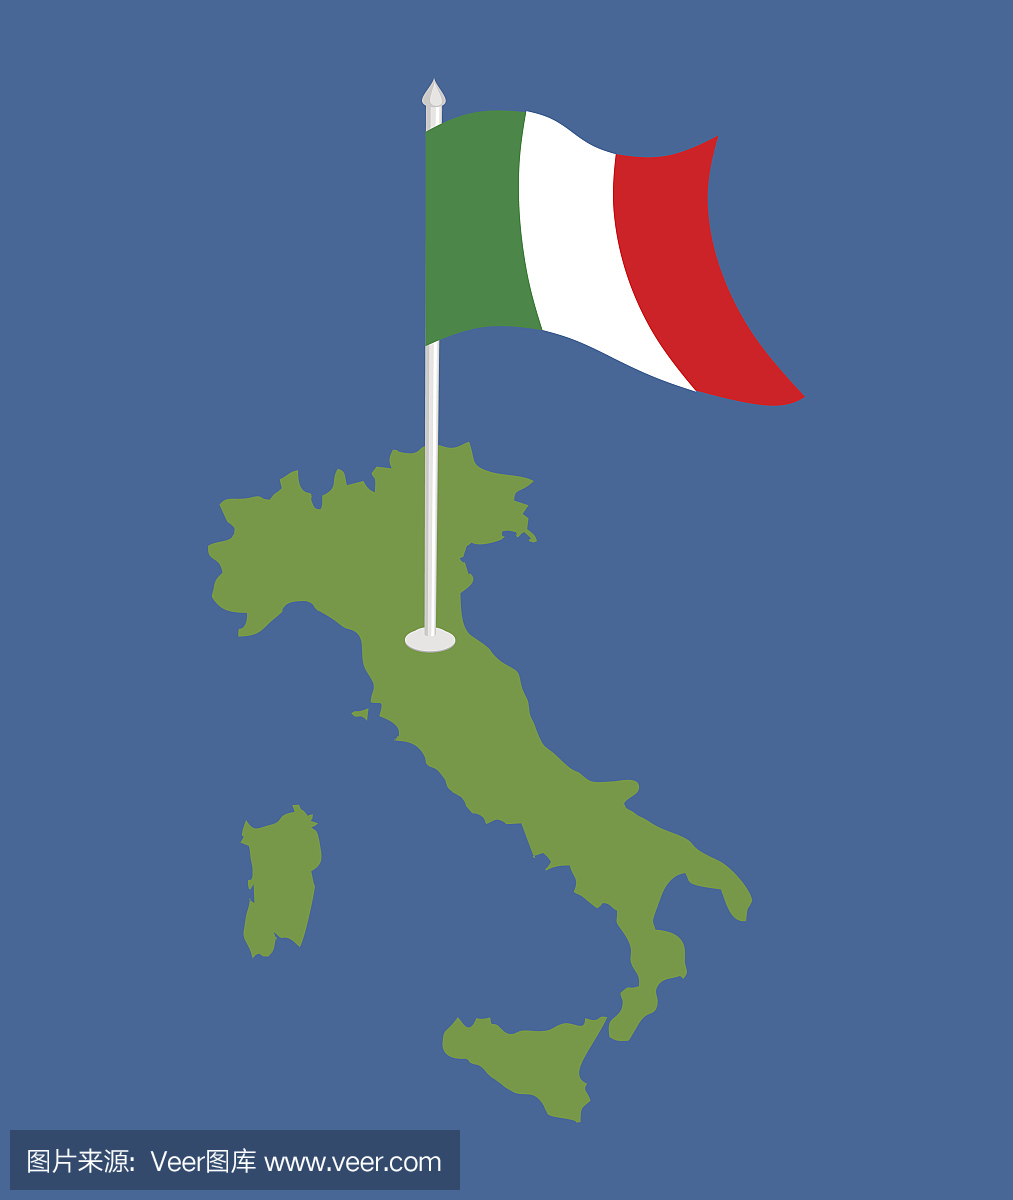 意大利地图和国旗。意大利横幅和土地面积。国